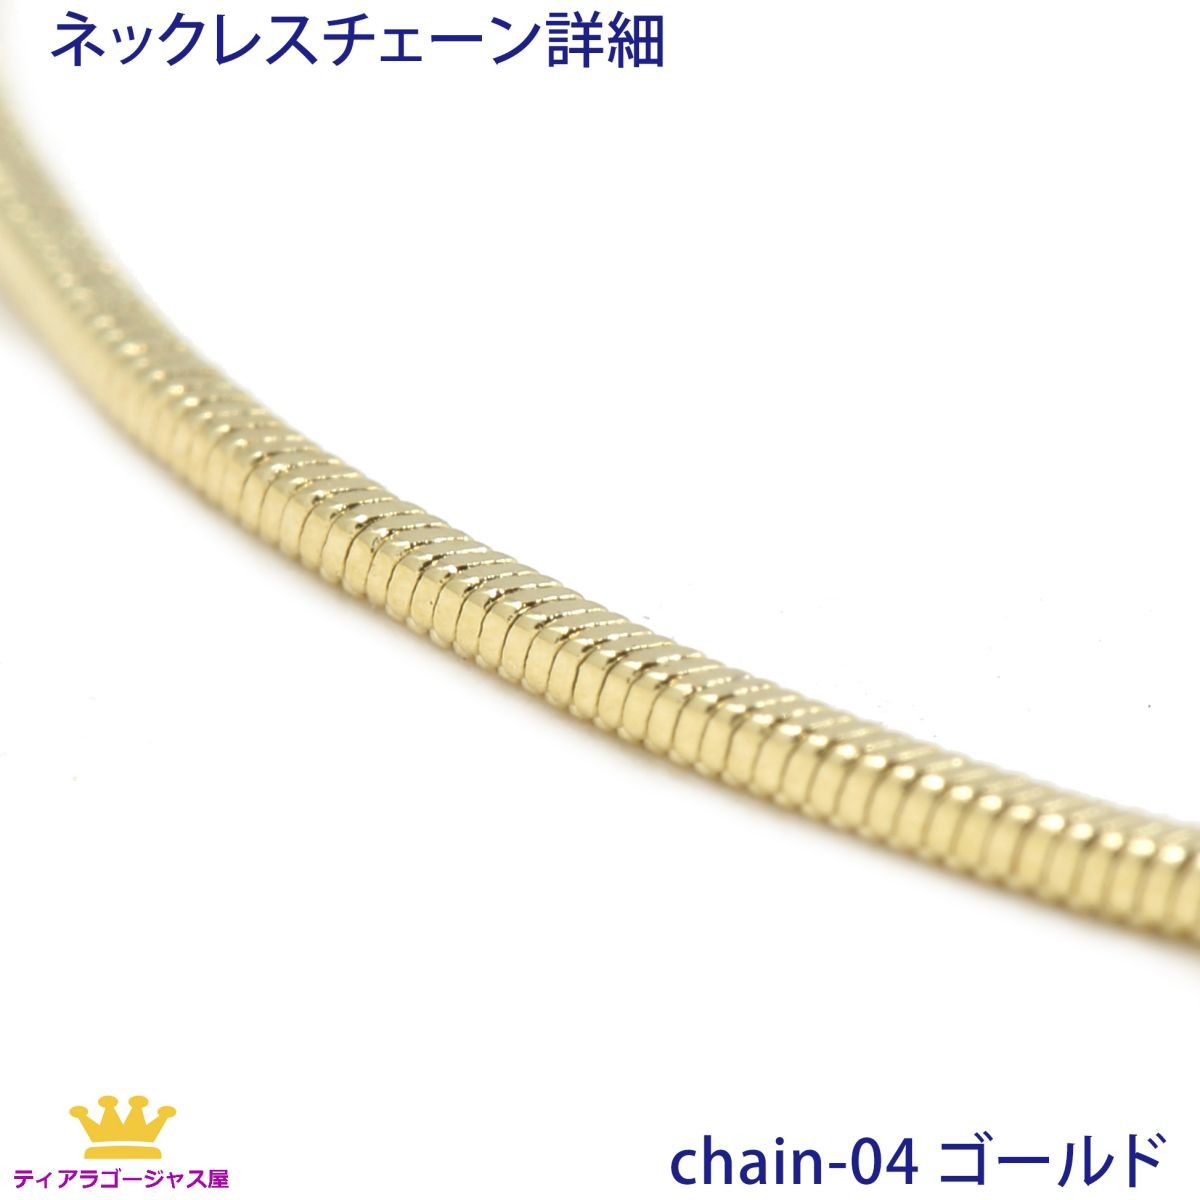 5本組 ネックレス チェーン チェーンのみ アクセサリーパーツ スネーク 45cm 45センチ :chain-04-45-5:ステージアクセサリーゴージャス屋  - 通販 - Yahoo!ショッピング